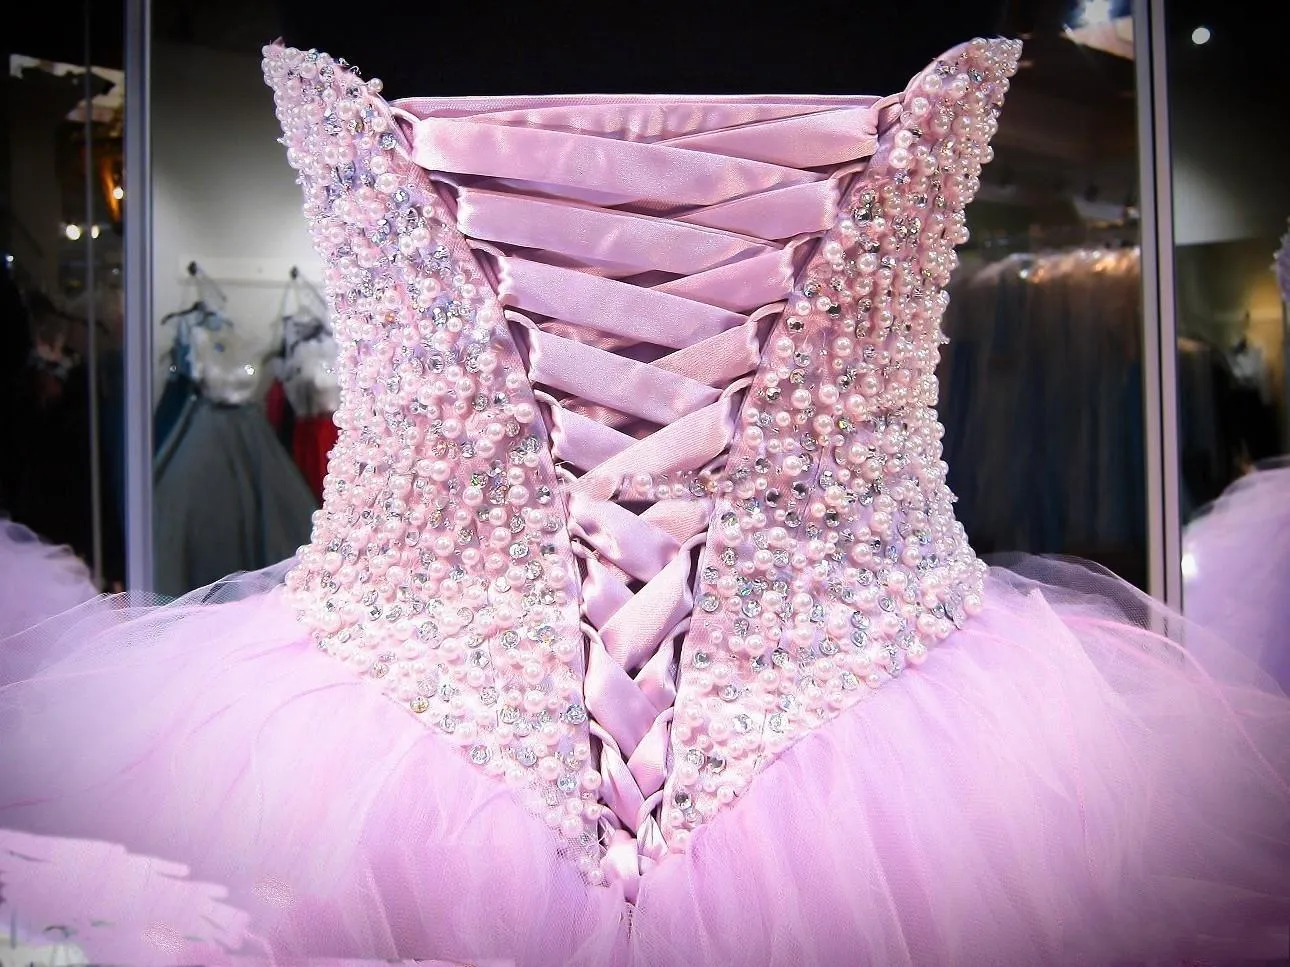 Lavender Quinceanera Dresses Ball Gown Corset Crystals жемчужные оборки TULLE 2020 Крушерные театрализованные платья для девочек, возлюбленная P8317782